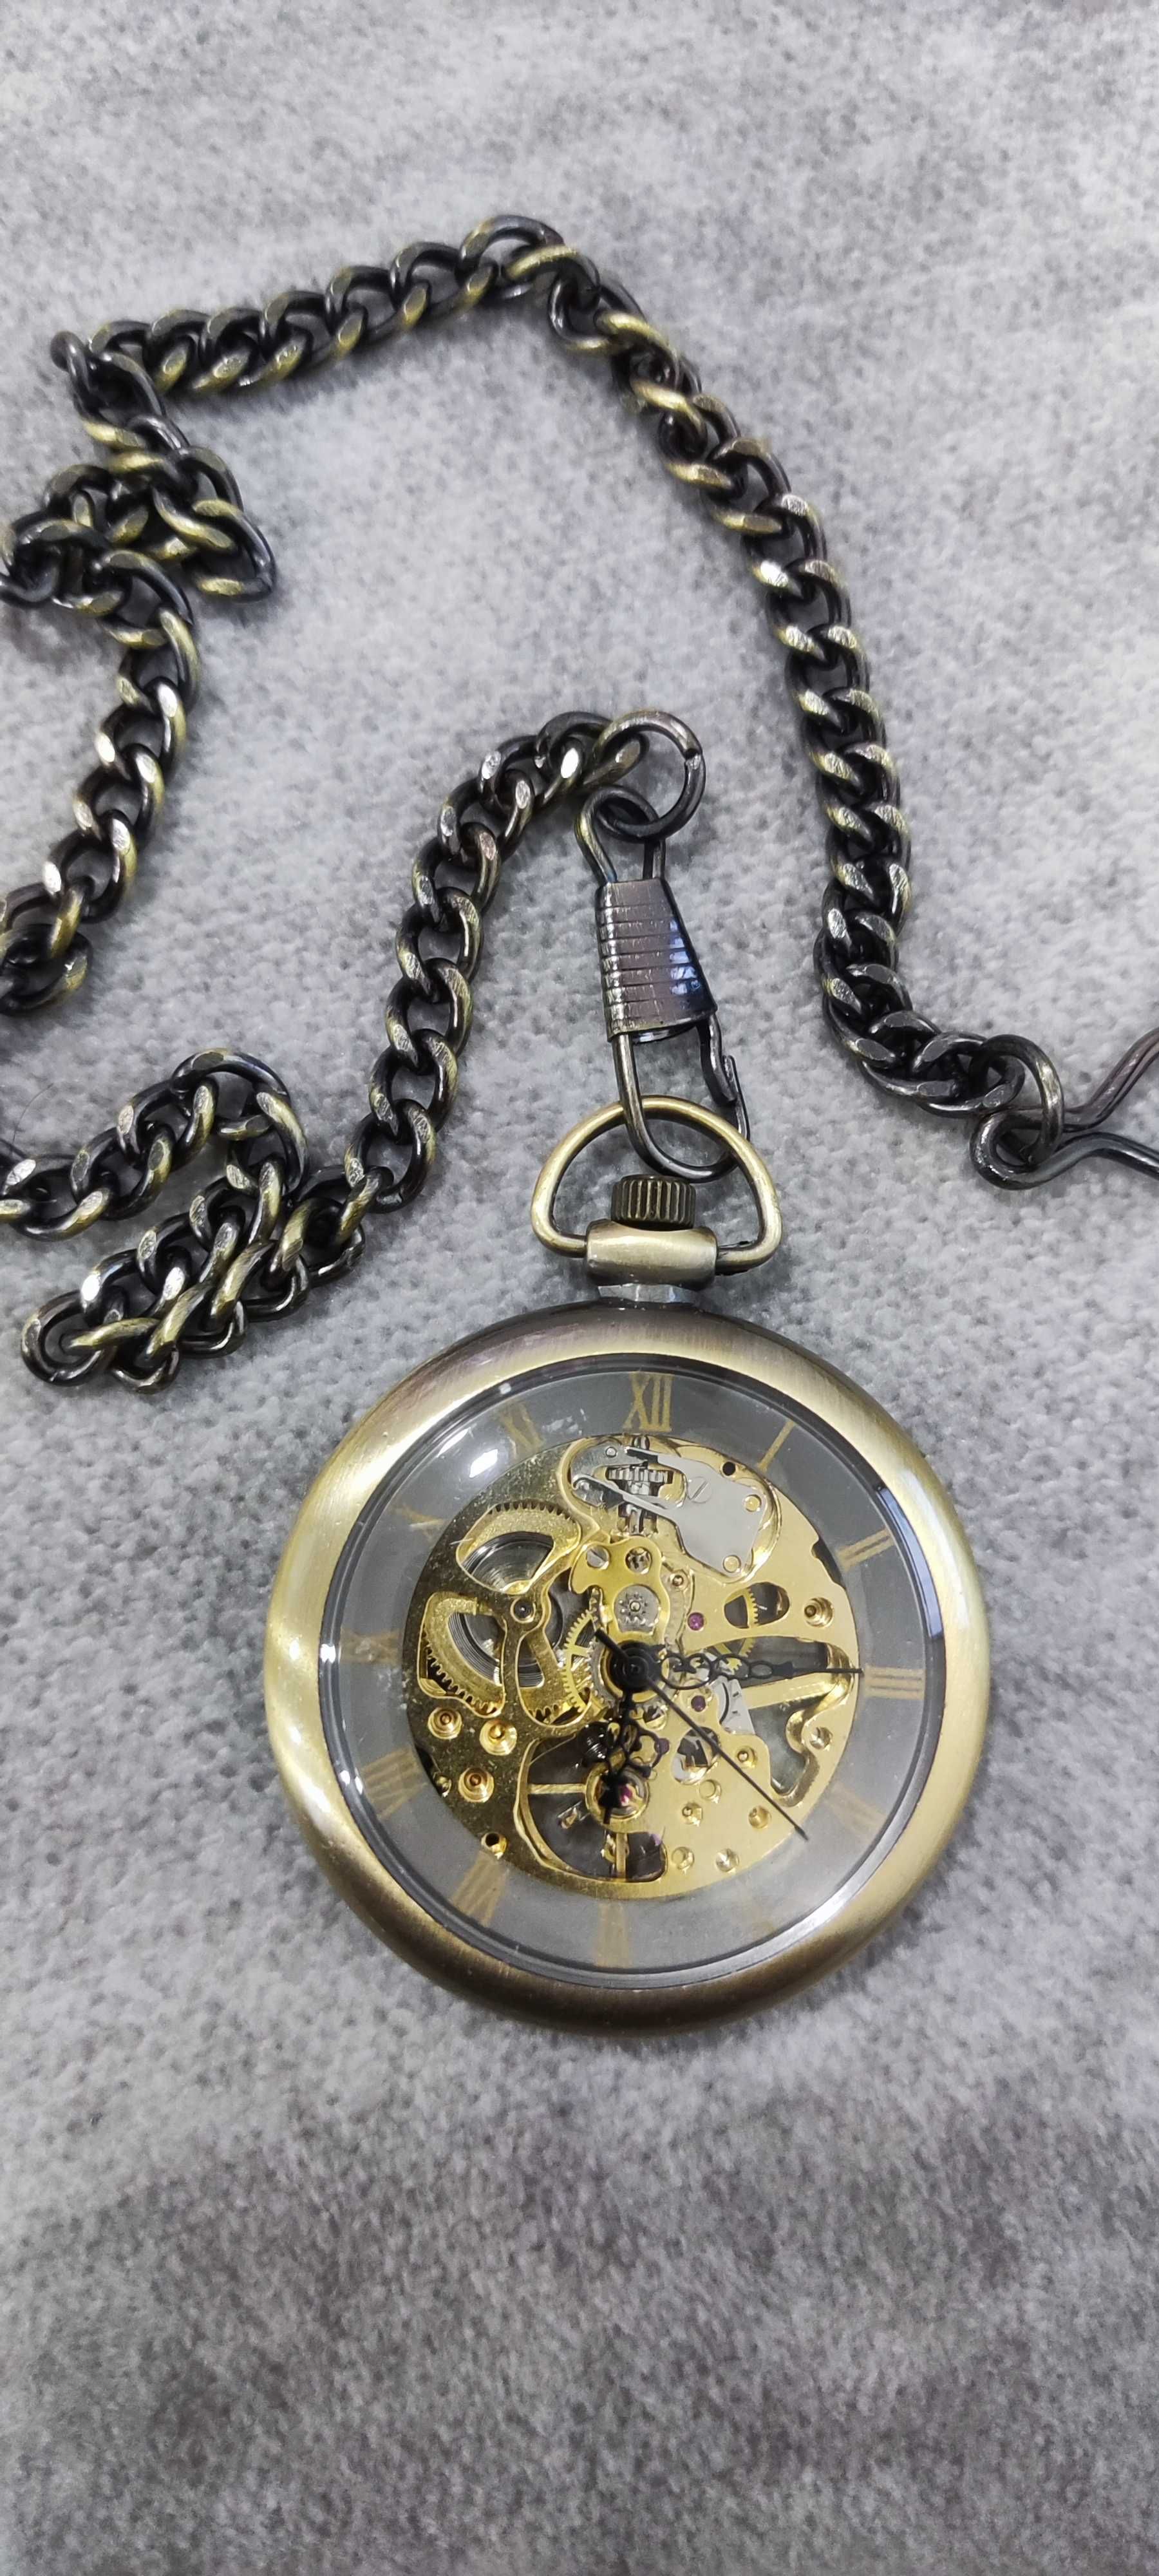 Relógio de Bolso Vintage Gorden Numeração Romana